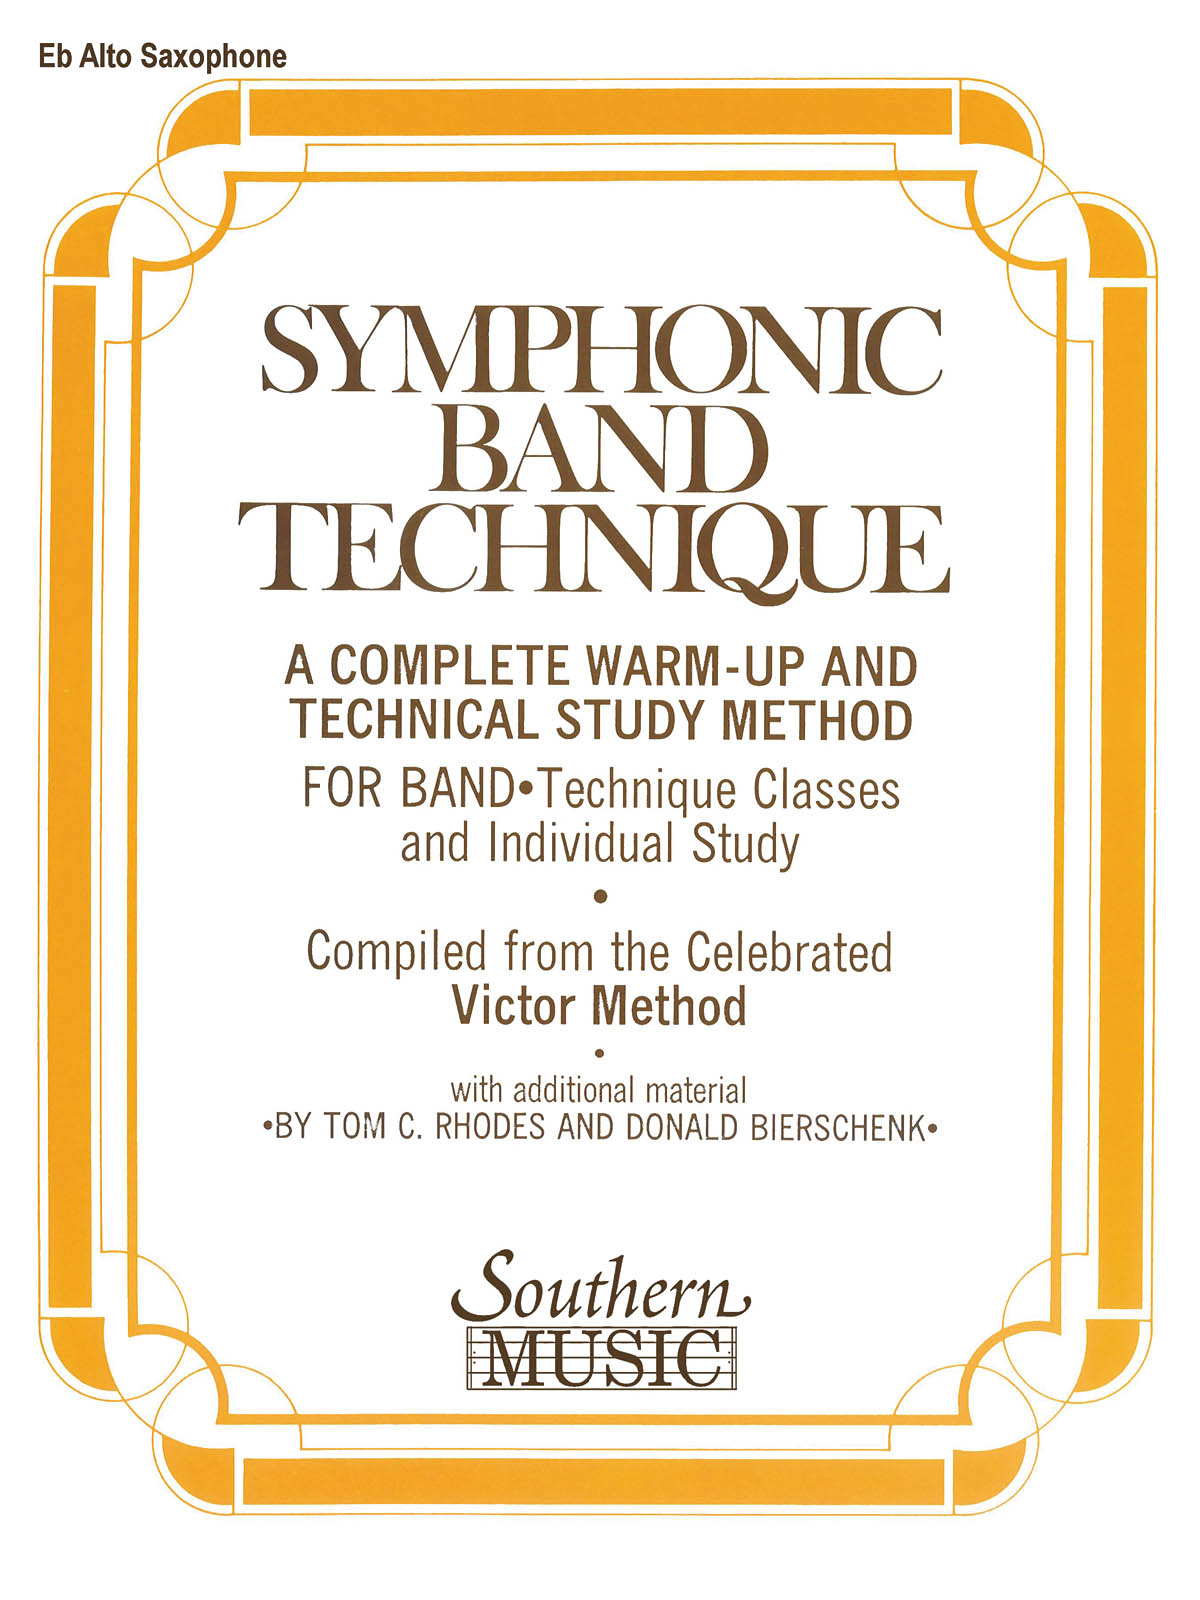 Symphonic Band Technique (Sbt) - altový saxofon